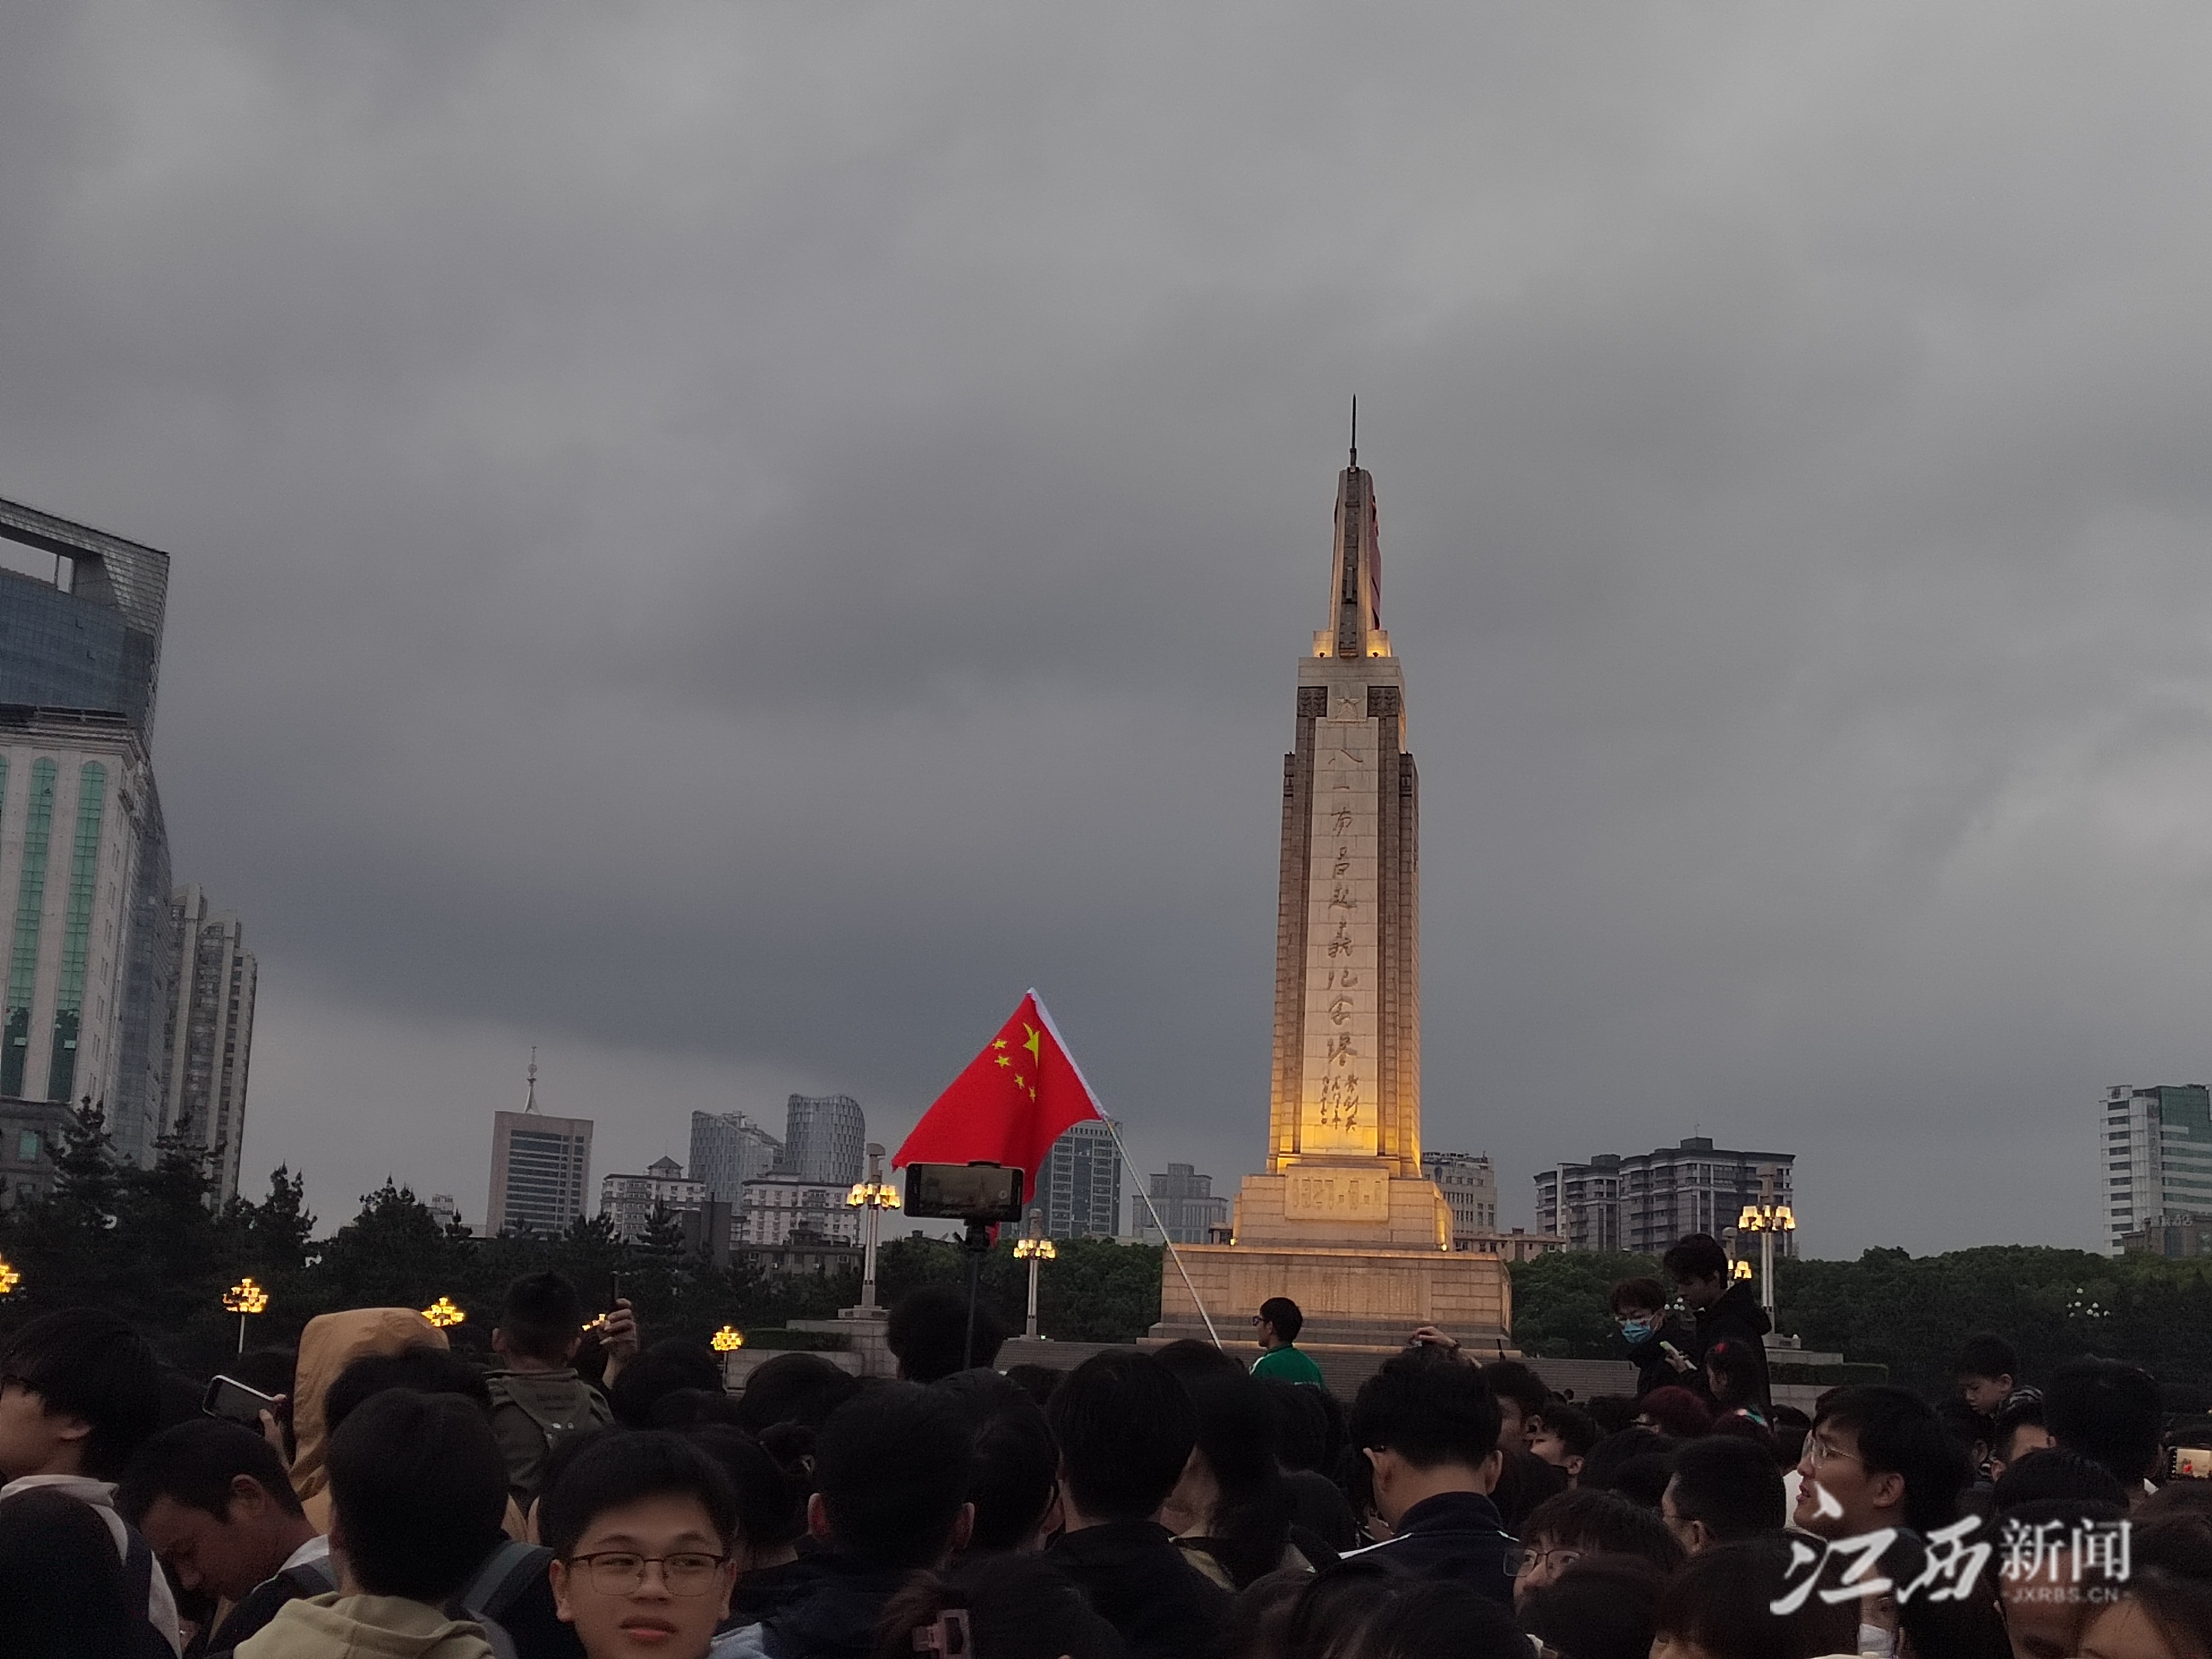 当日,近15万人走进南昌八一起义纪念馆数据统计,五一假期共有7